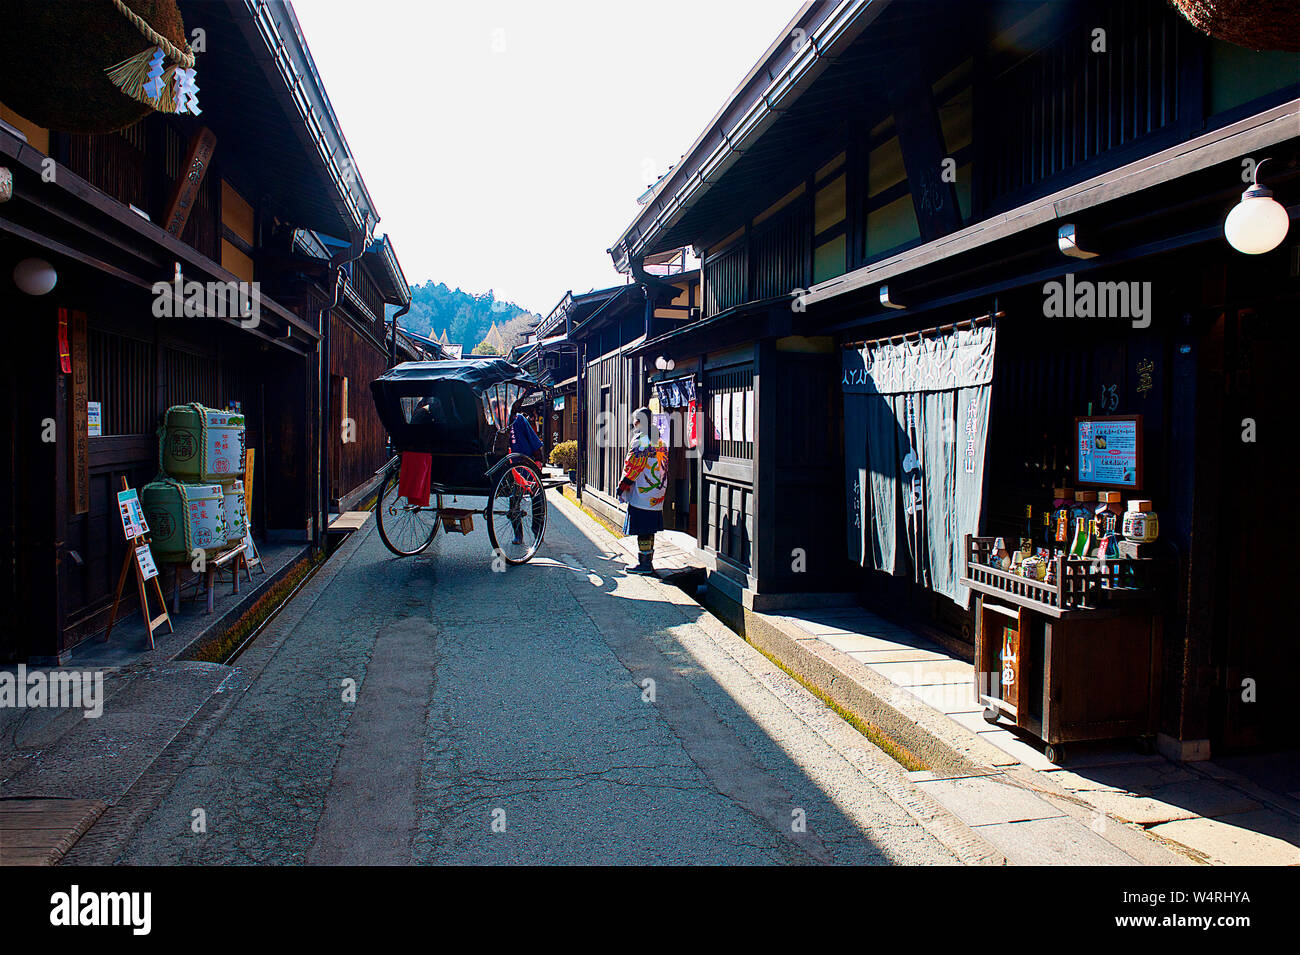 2-wheel rickshaw on stone street with small shops, Hida-Takayama, Takayama, Gifu Prefecture, Japan Stock Photo